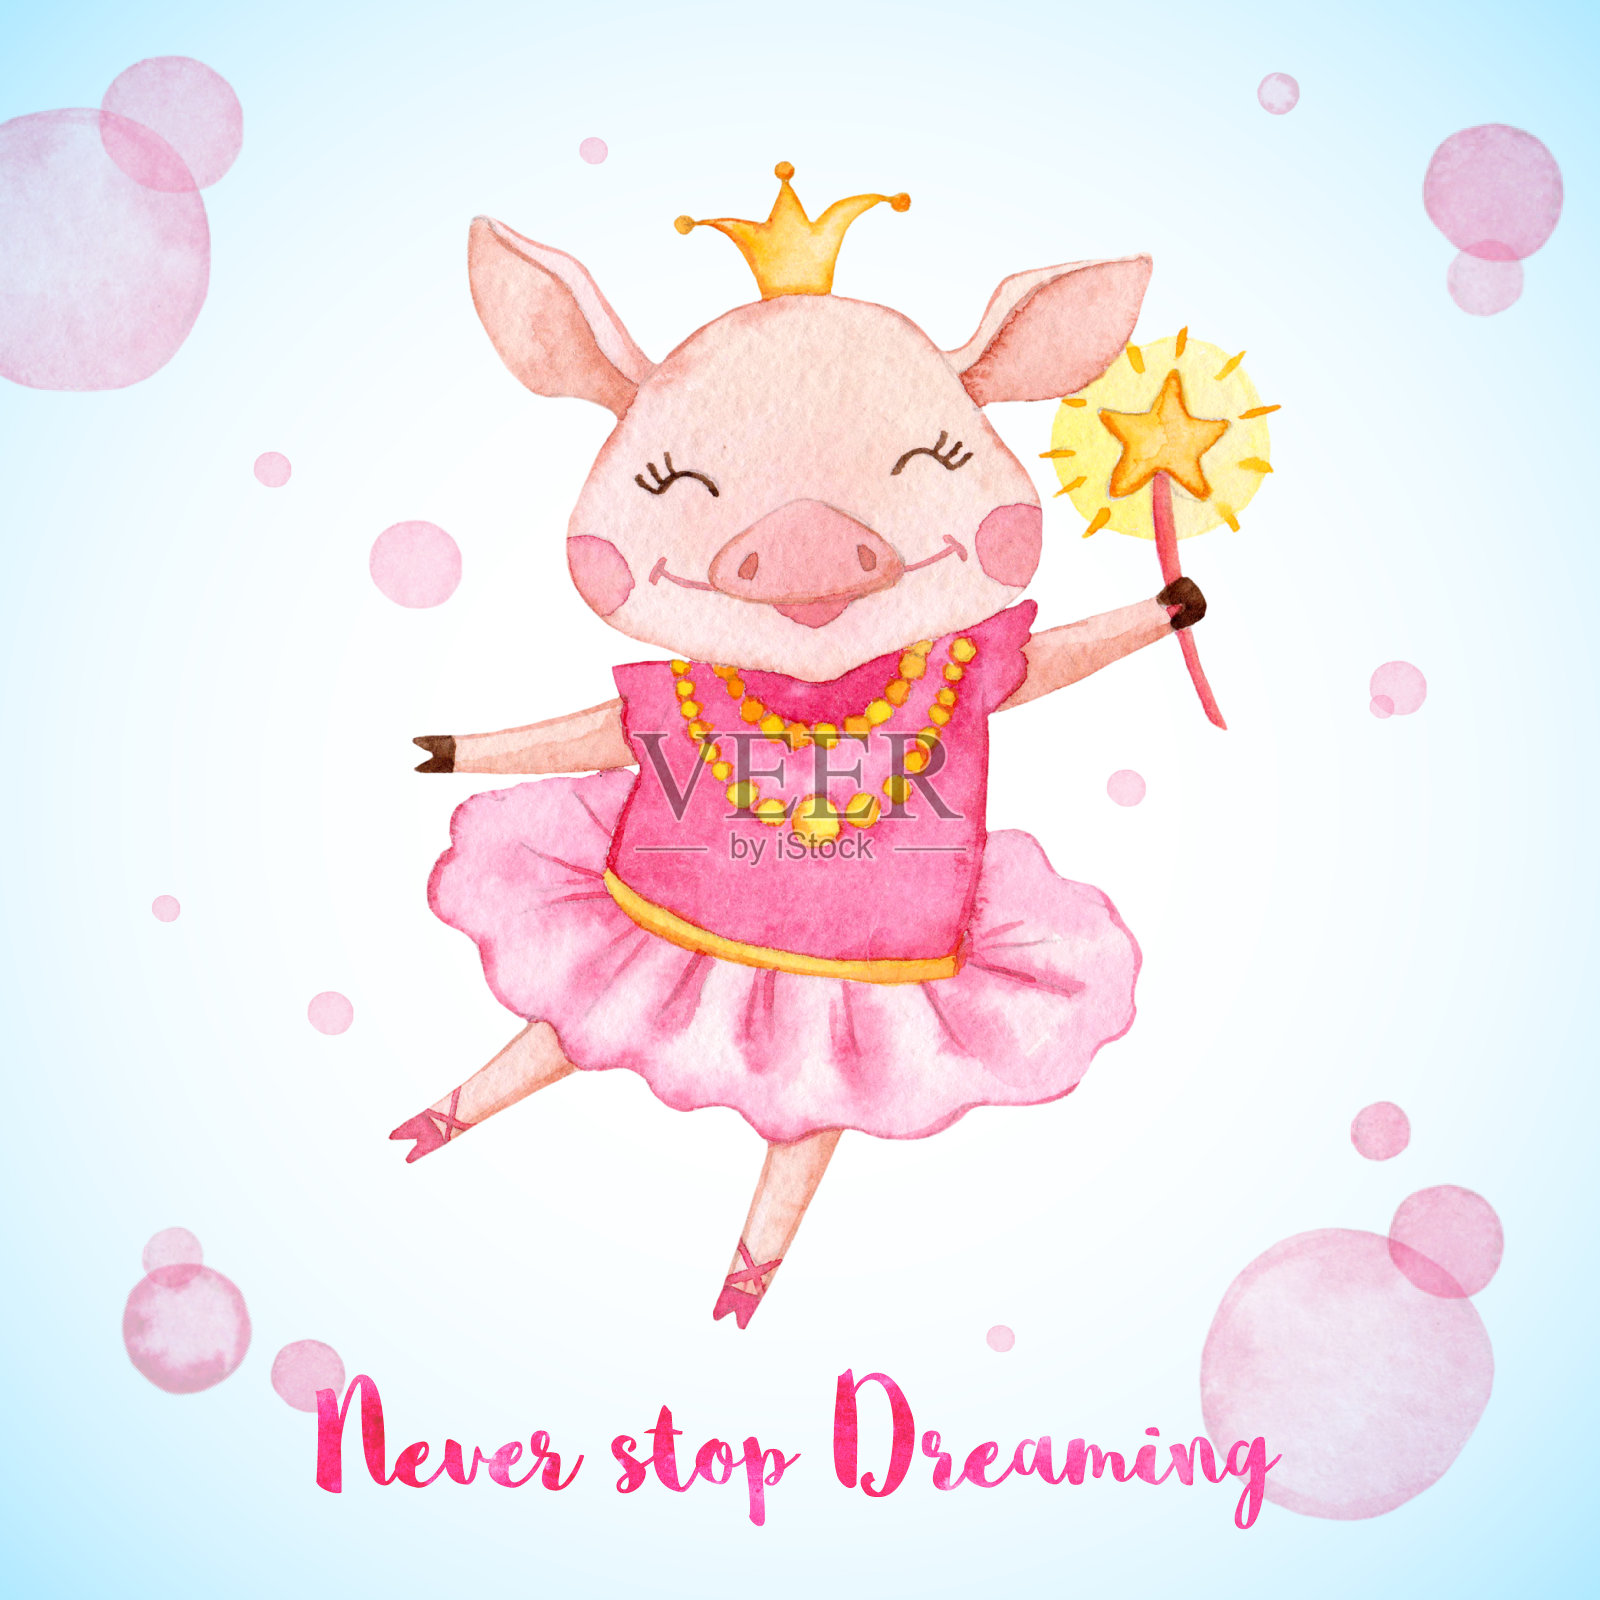 水彩贺卡与可爱的芭蕾舞猪。插画图片素材